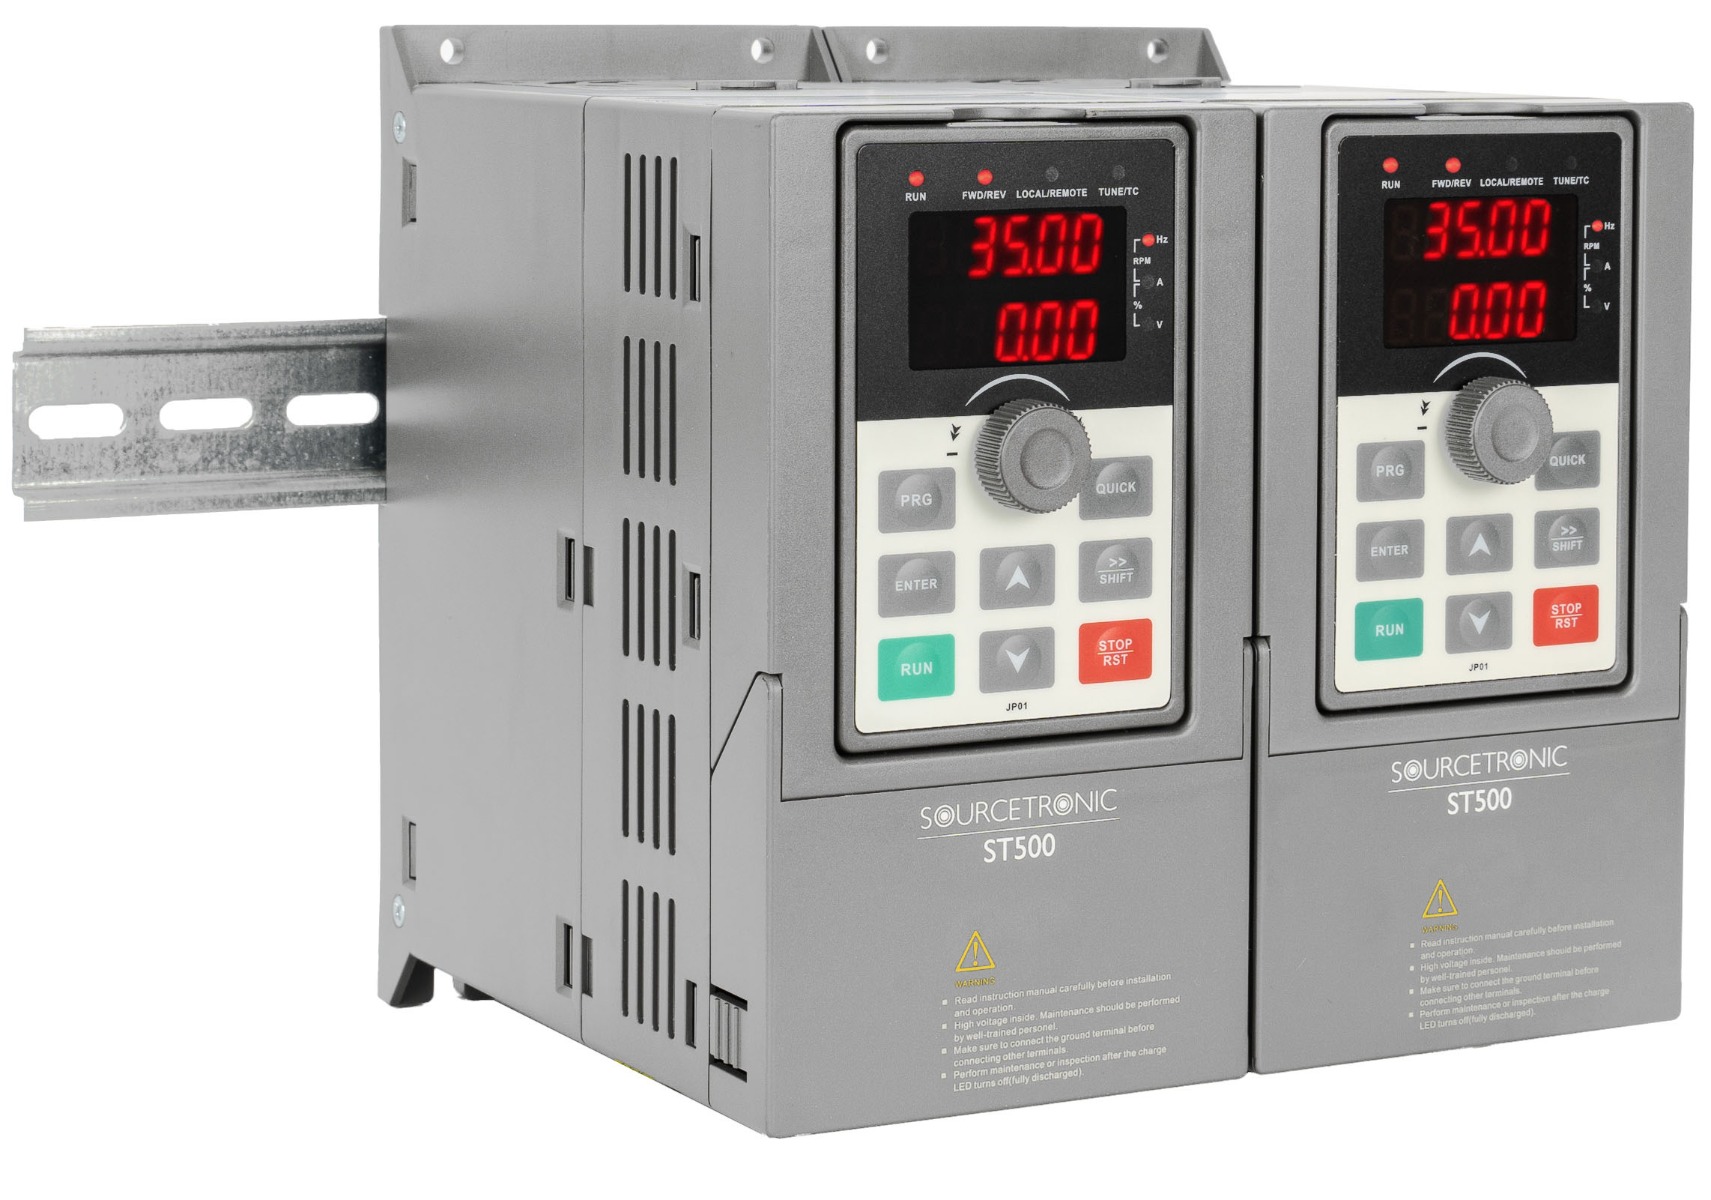 Frequenzumrichter 4kW FU 3/3 ph 400V 9,5A 4kW EMV IP20 - eprofishop